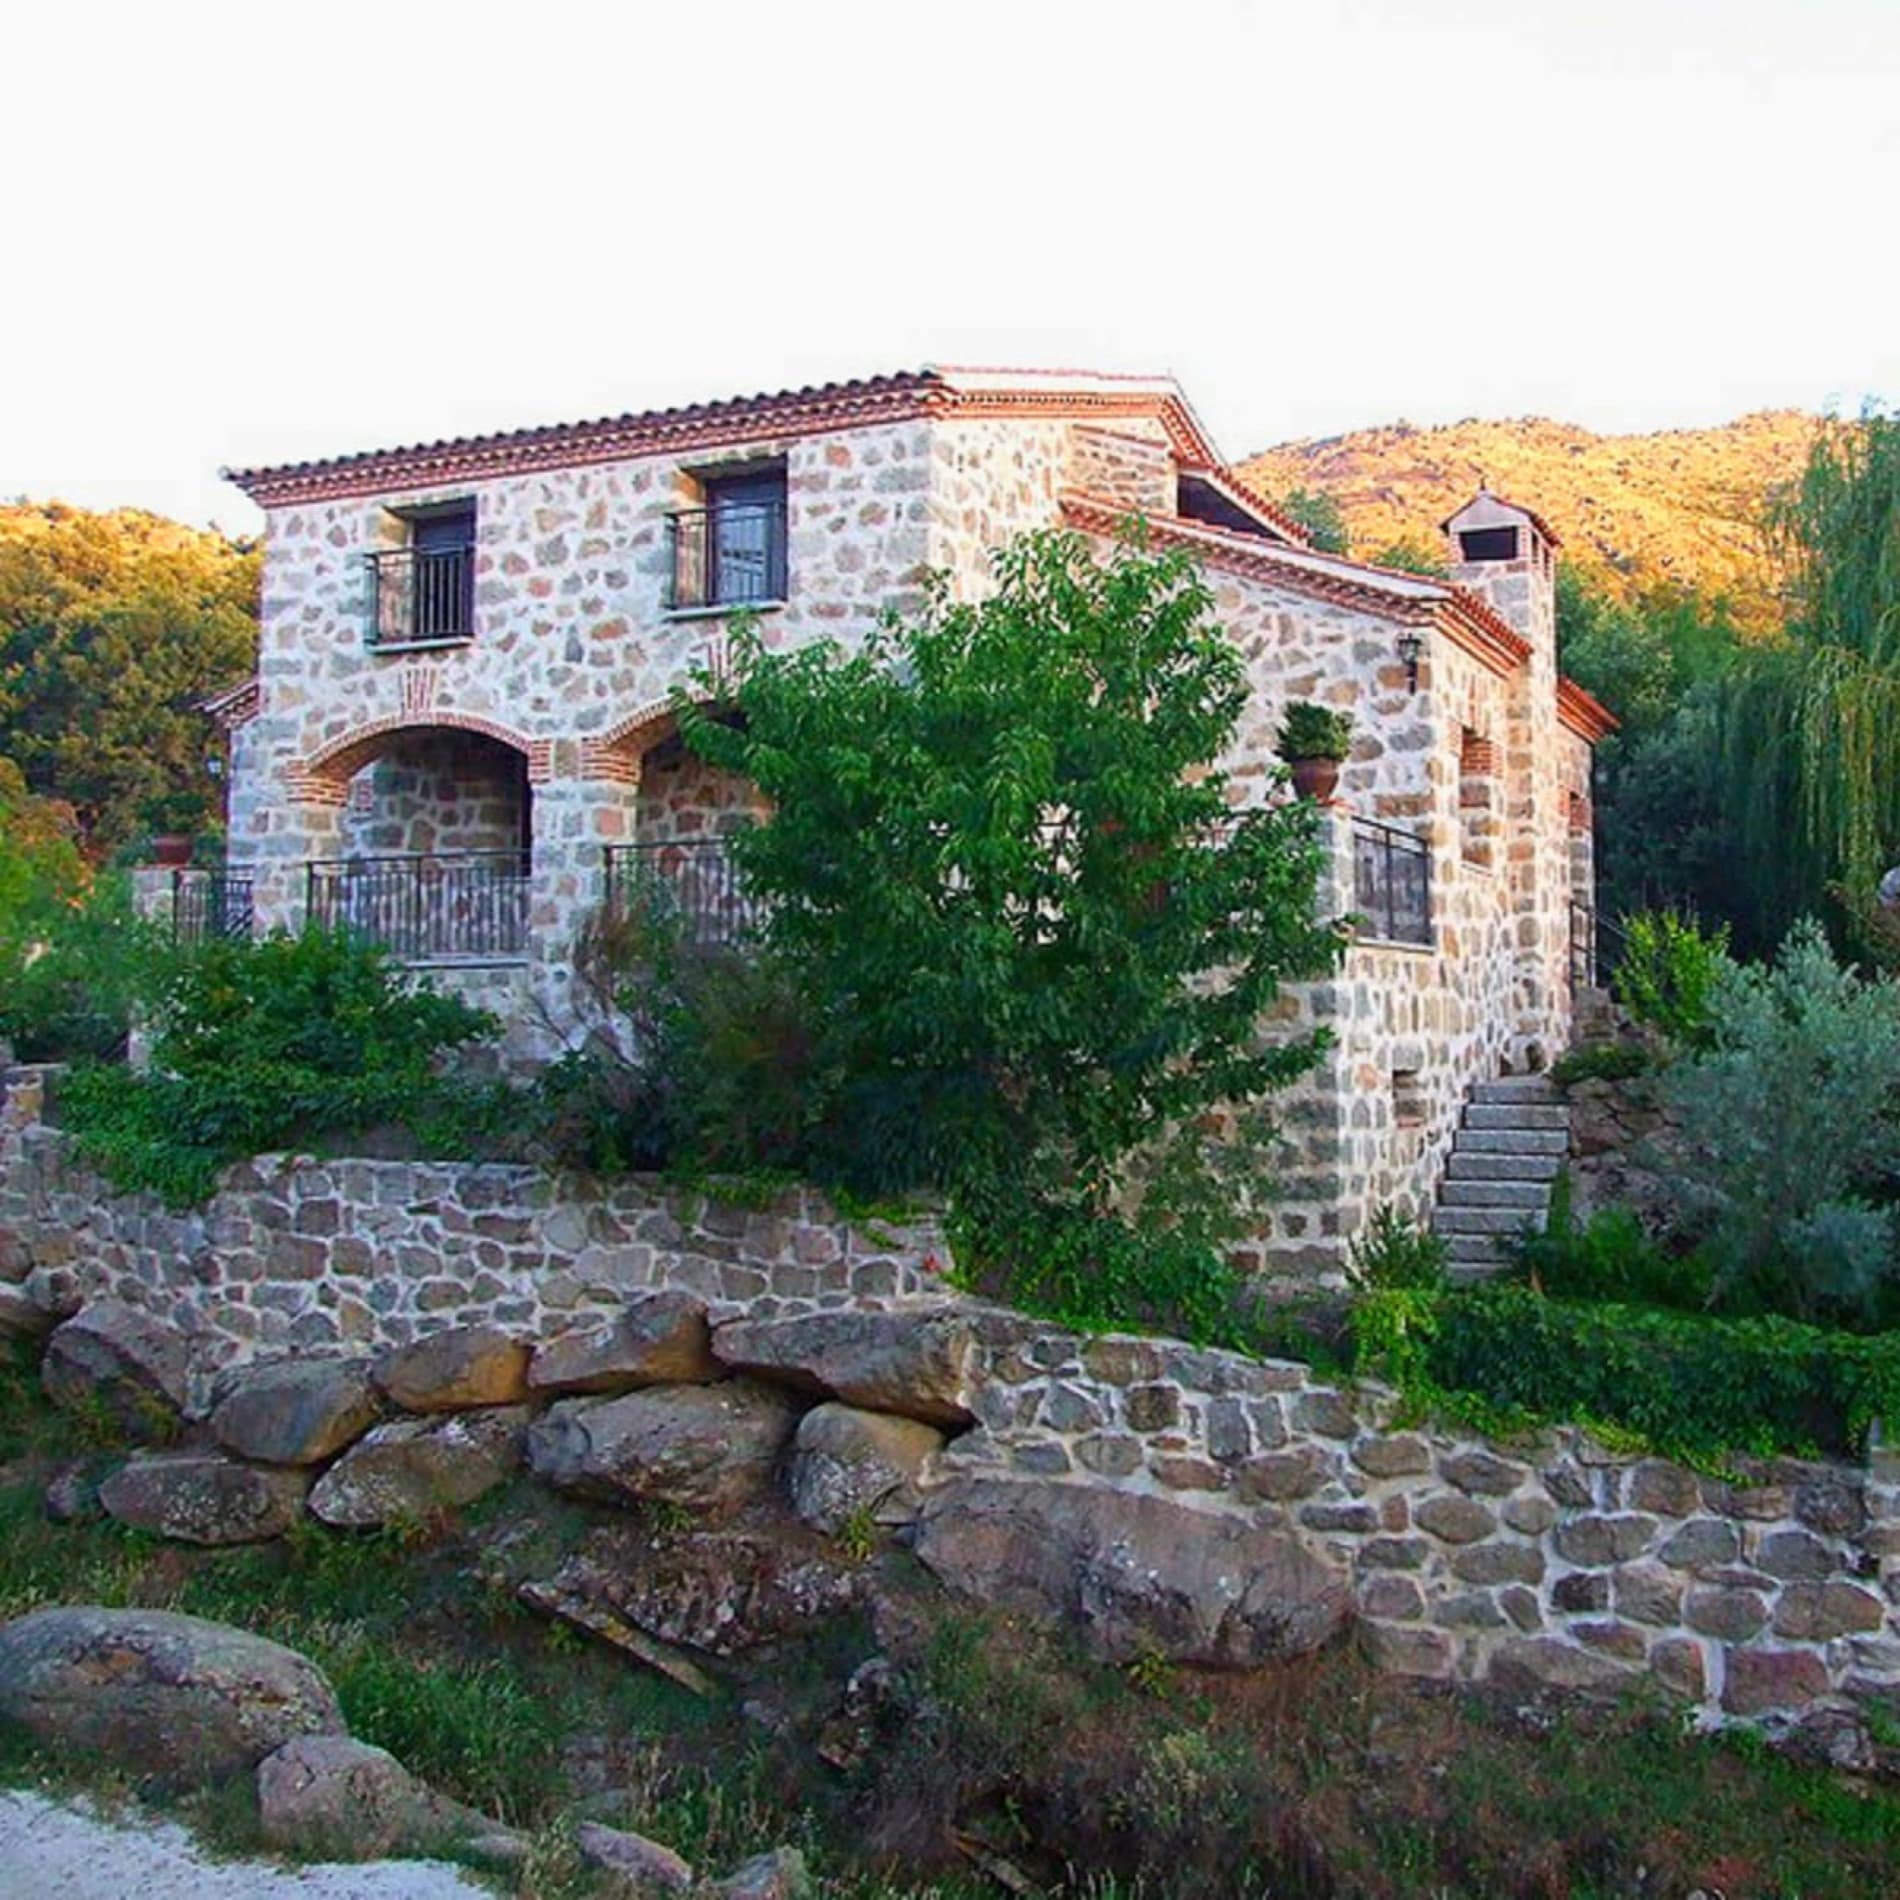 Preciosa casa rural en Navaluenga construida en piedra